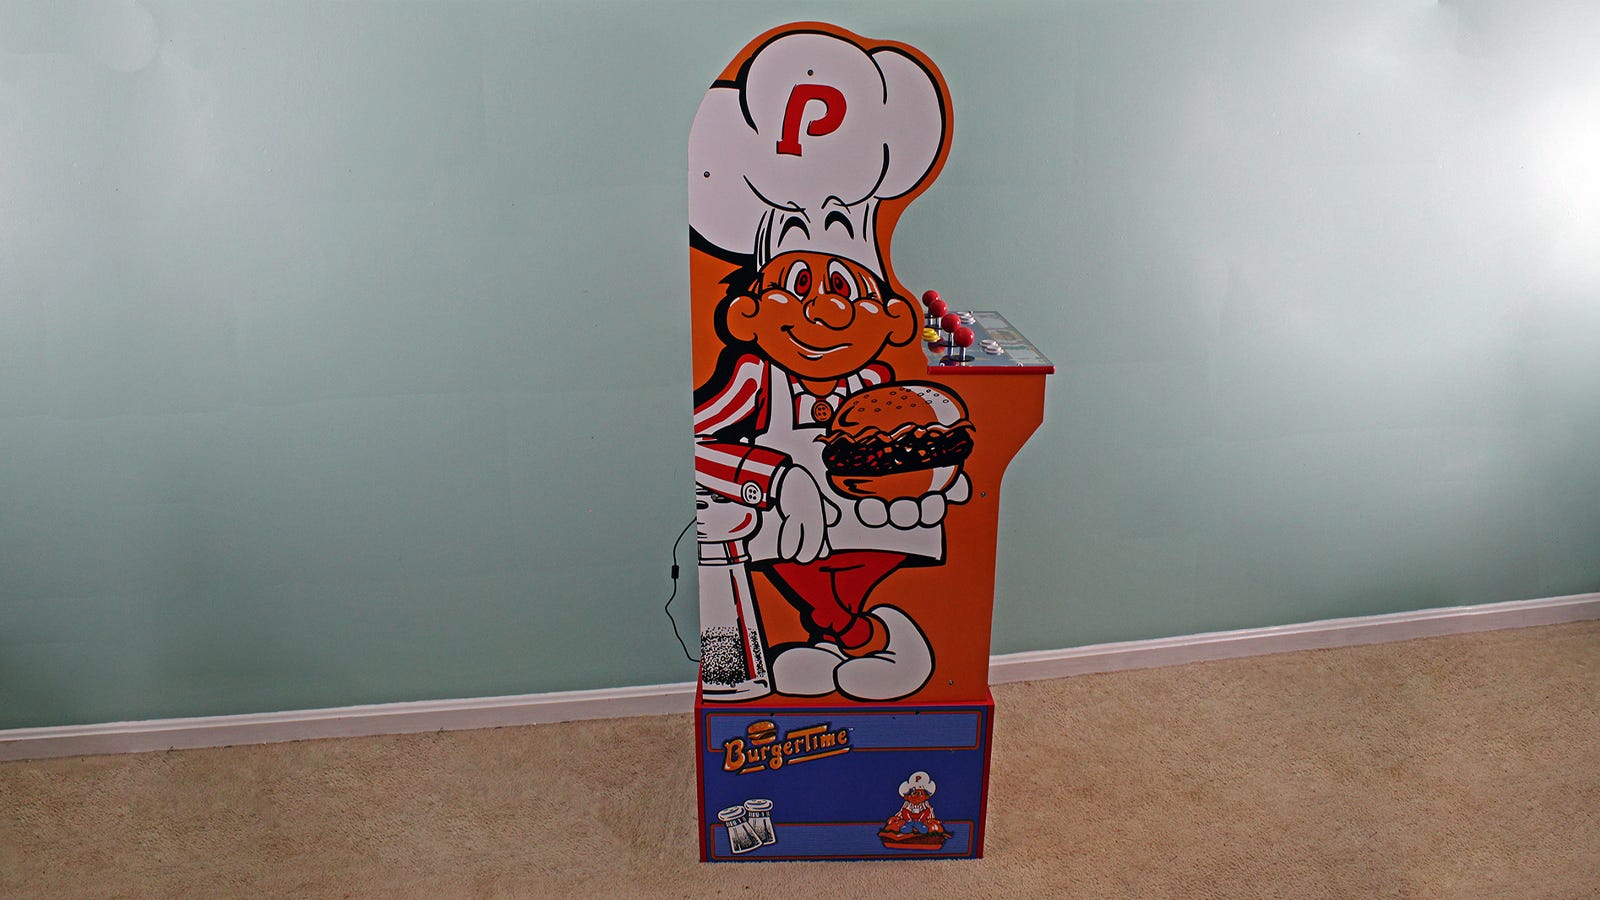 Sidovy av Burger Time-maskinen som visar profilen i form av en kockmössa.